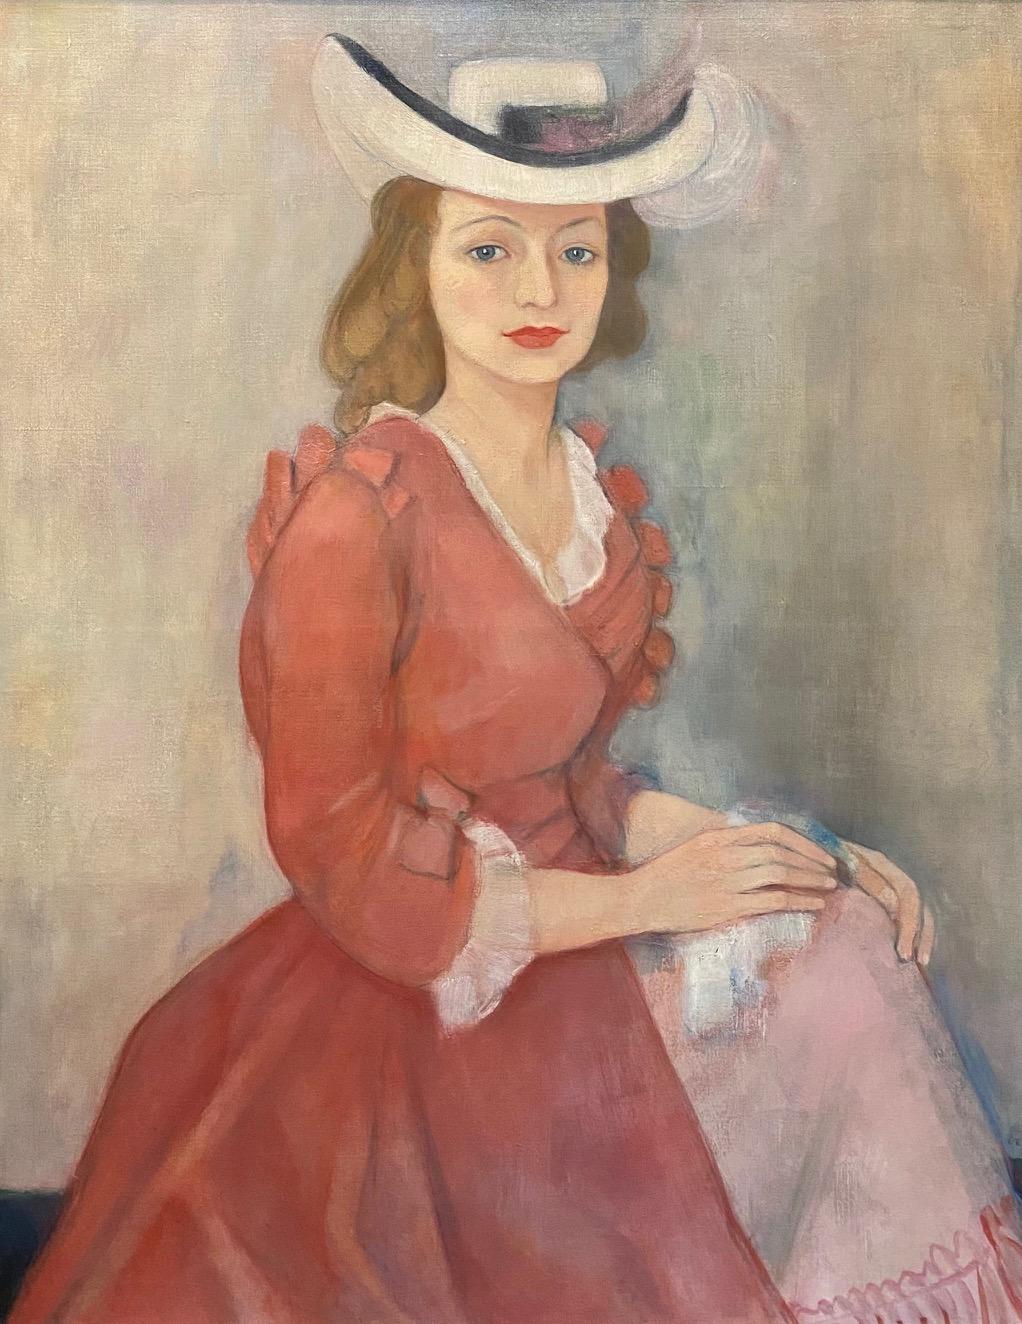 Woman portrait by Ilse Voigt - Oil on canvas 96x76 cm